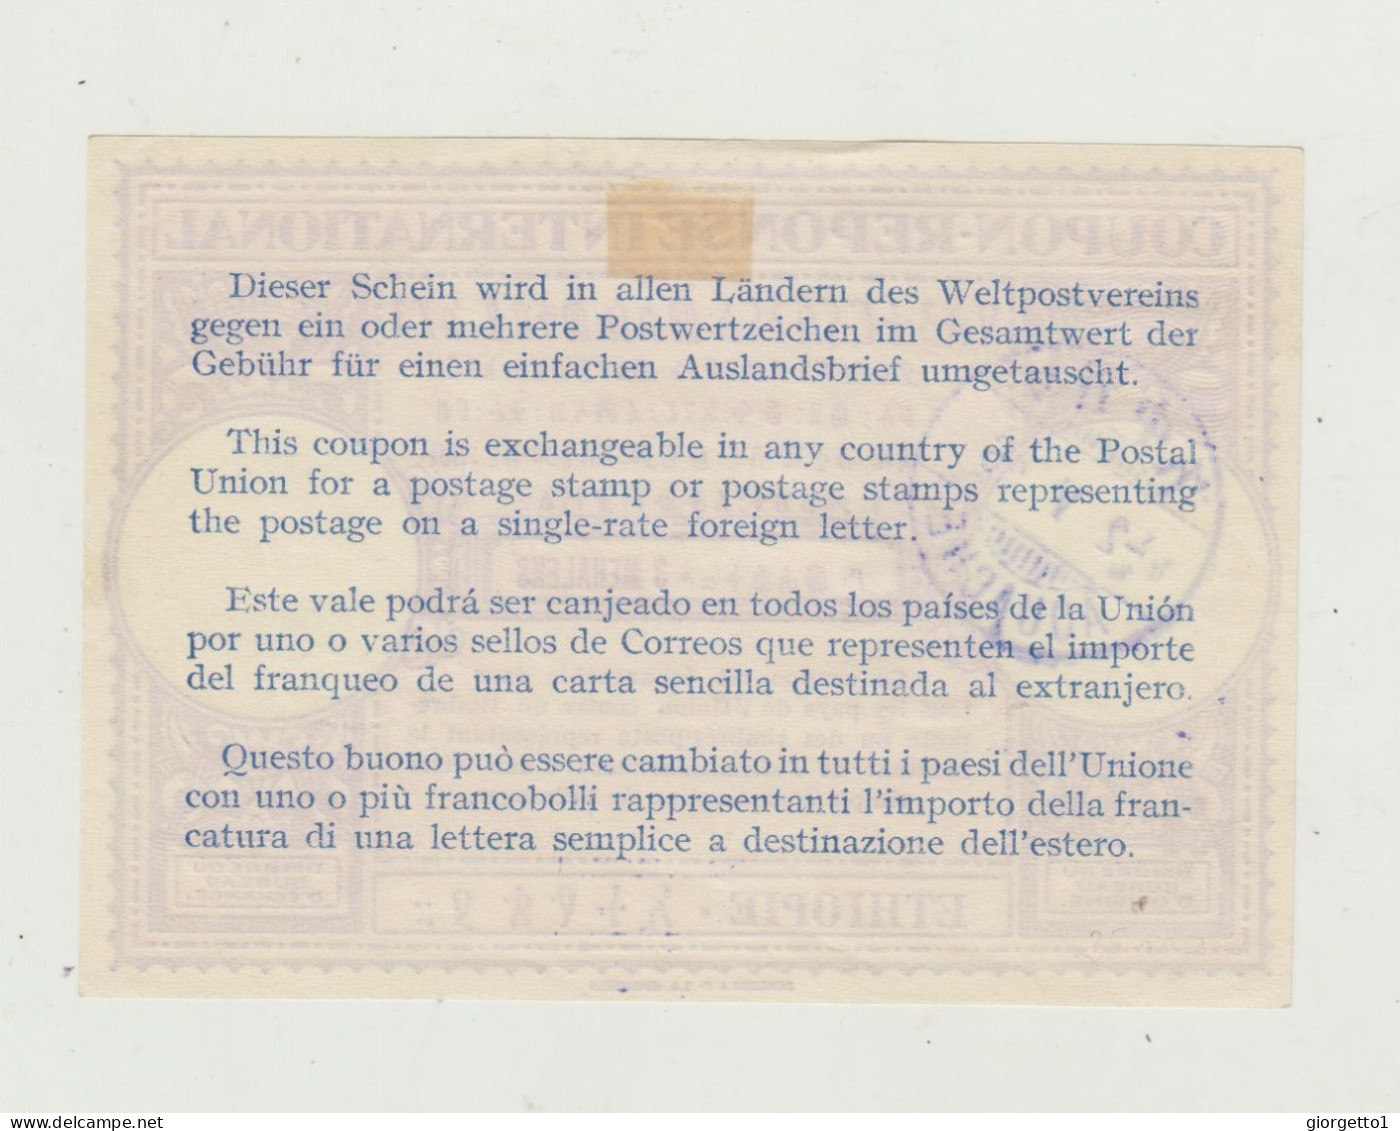 TAGLIANDO - RICEVUTA - COUPON  POSTALE PER FRANCOBOLLI SPEDIZIONE INTERNAZIONALE - ETIOPIA -DEL 1936 - AFRICA ORIENTALE - Storia Postale